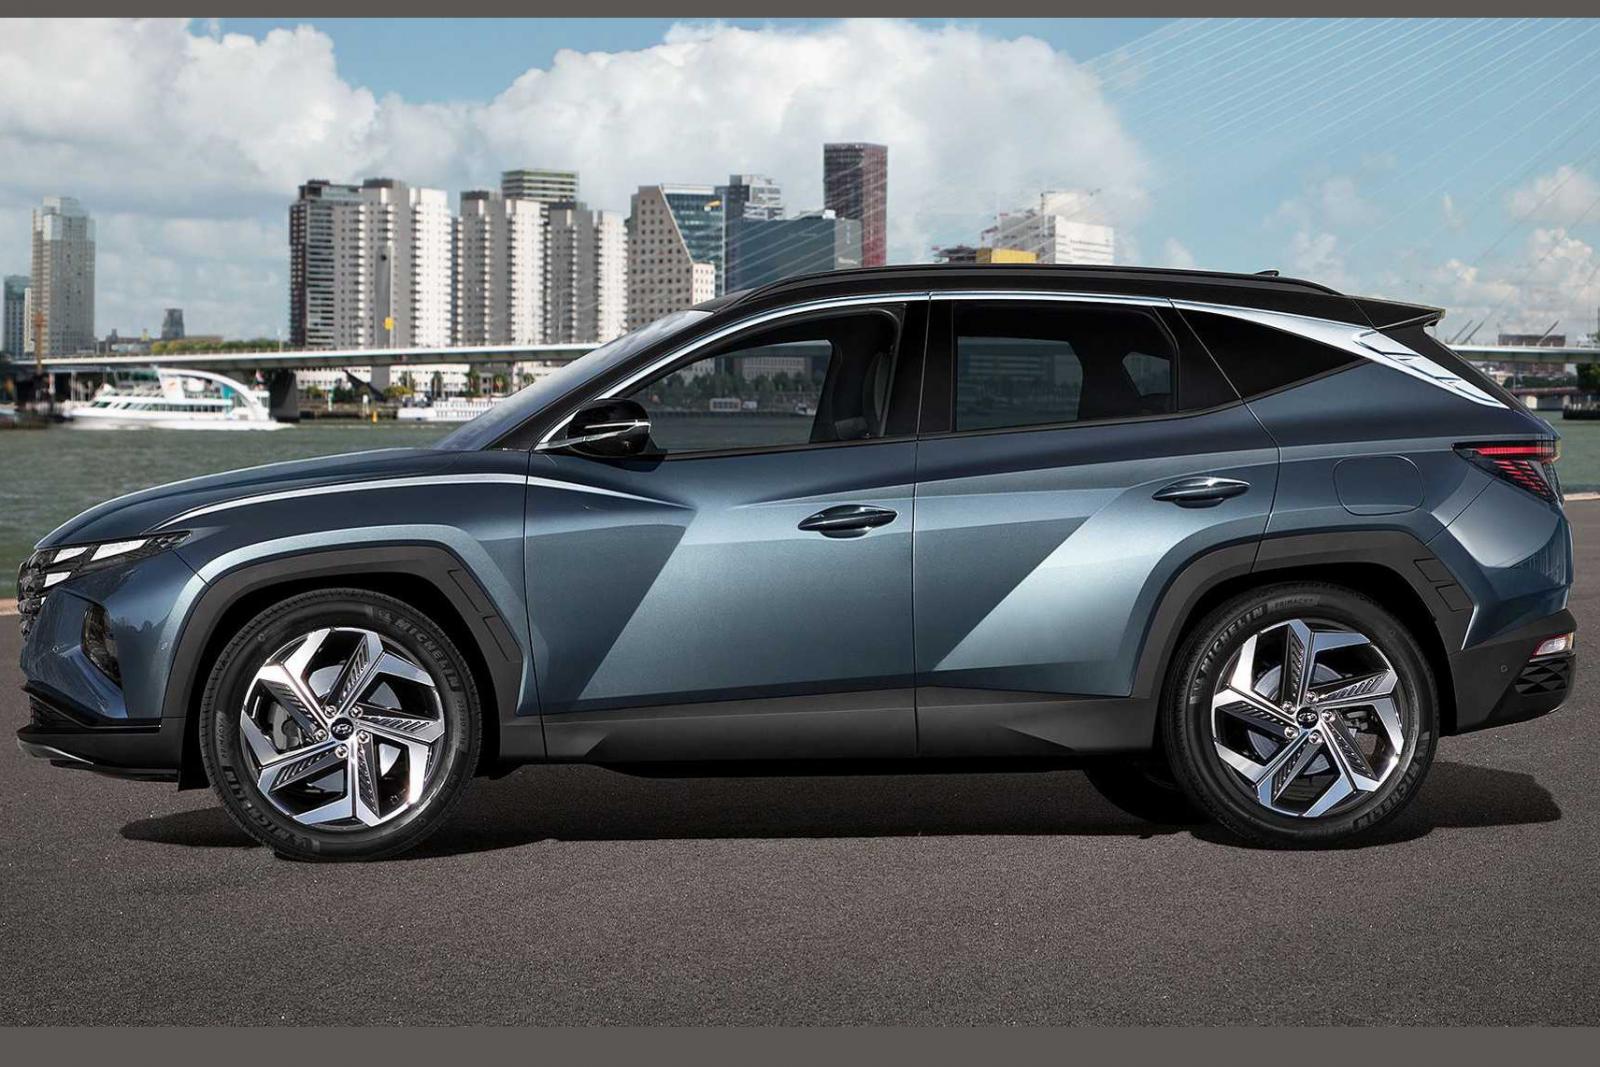 Đánh giá xe Hyundai Tucson 2021 về thiết kế thân xe - Ảnh 1.